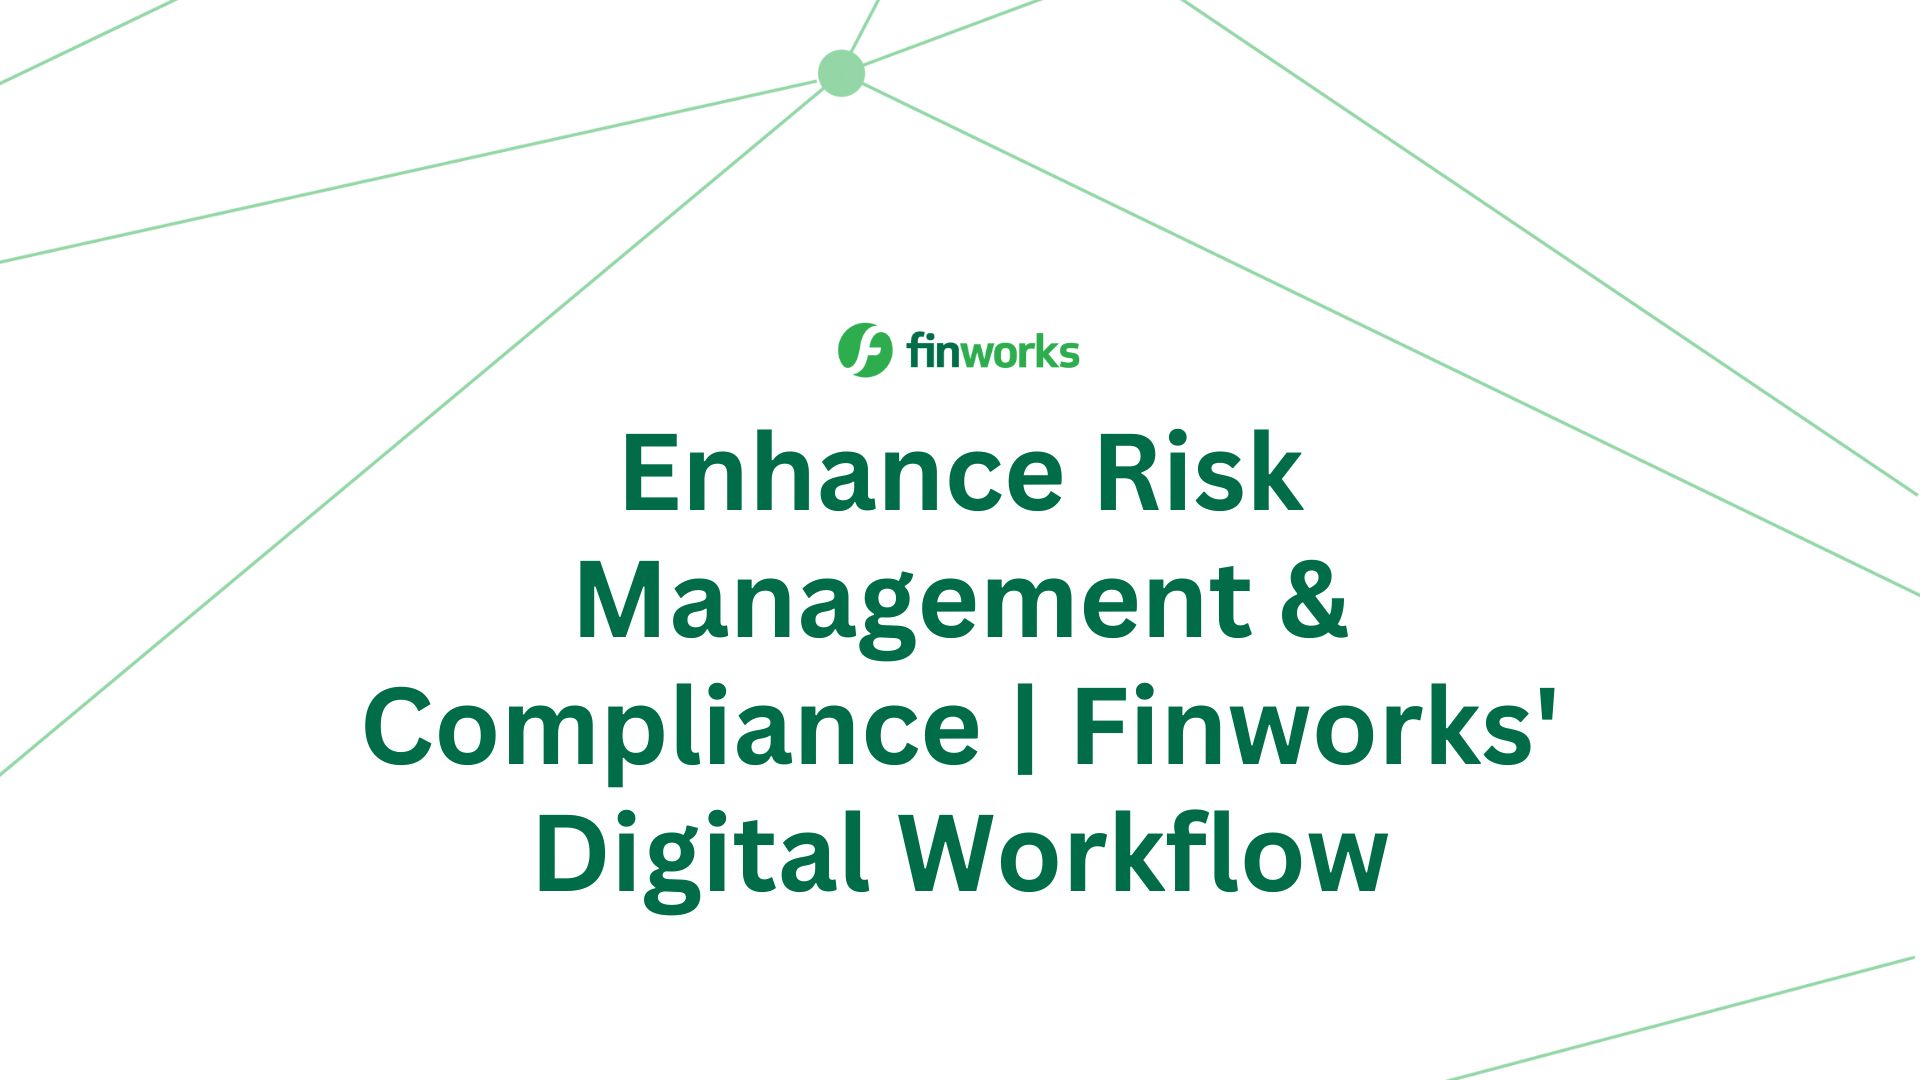 Enhance Risk Management & Compliance | Finworks' Digital Workflow